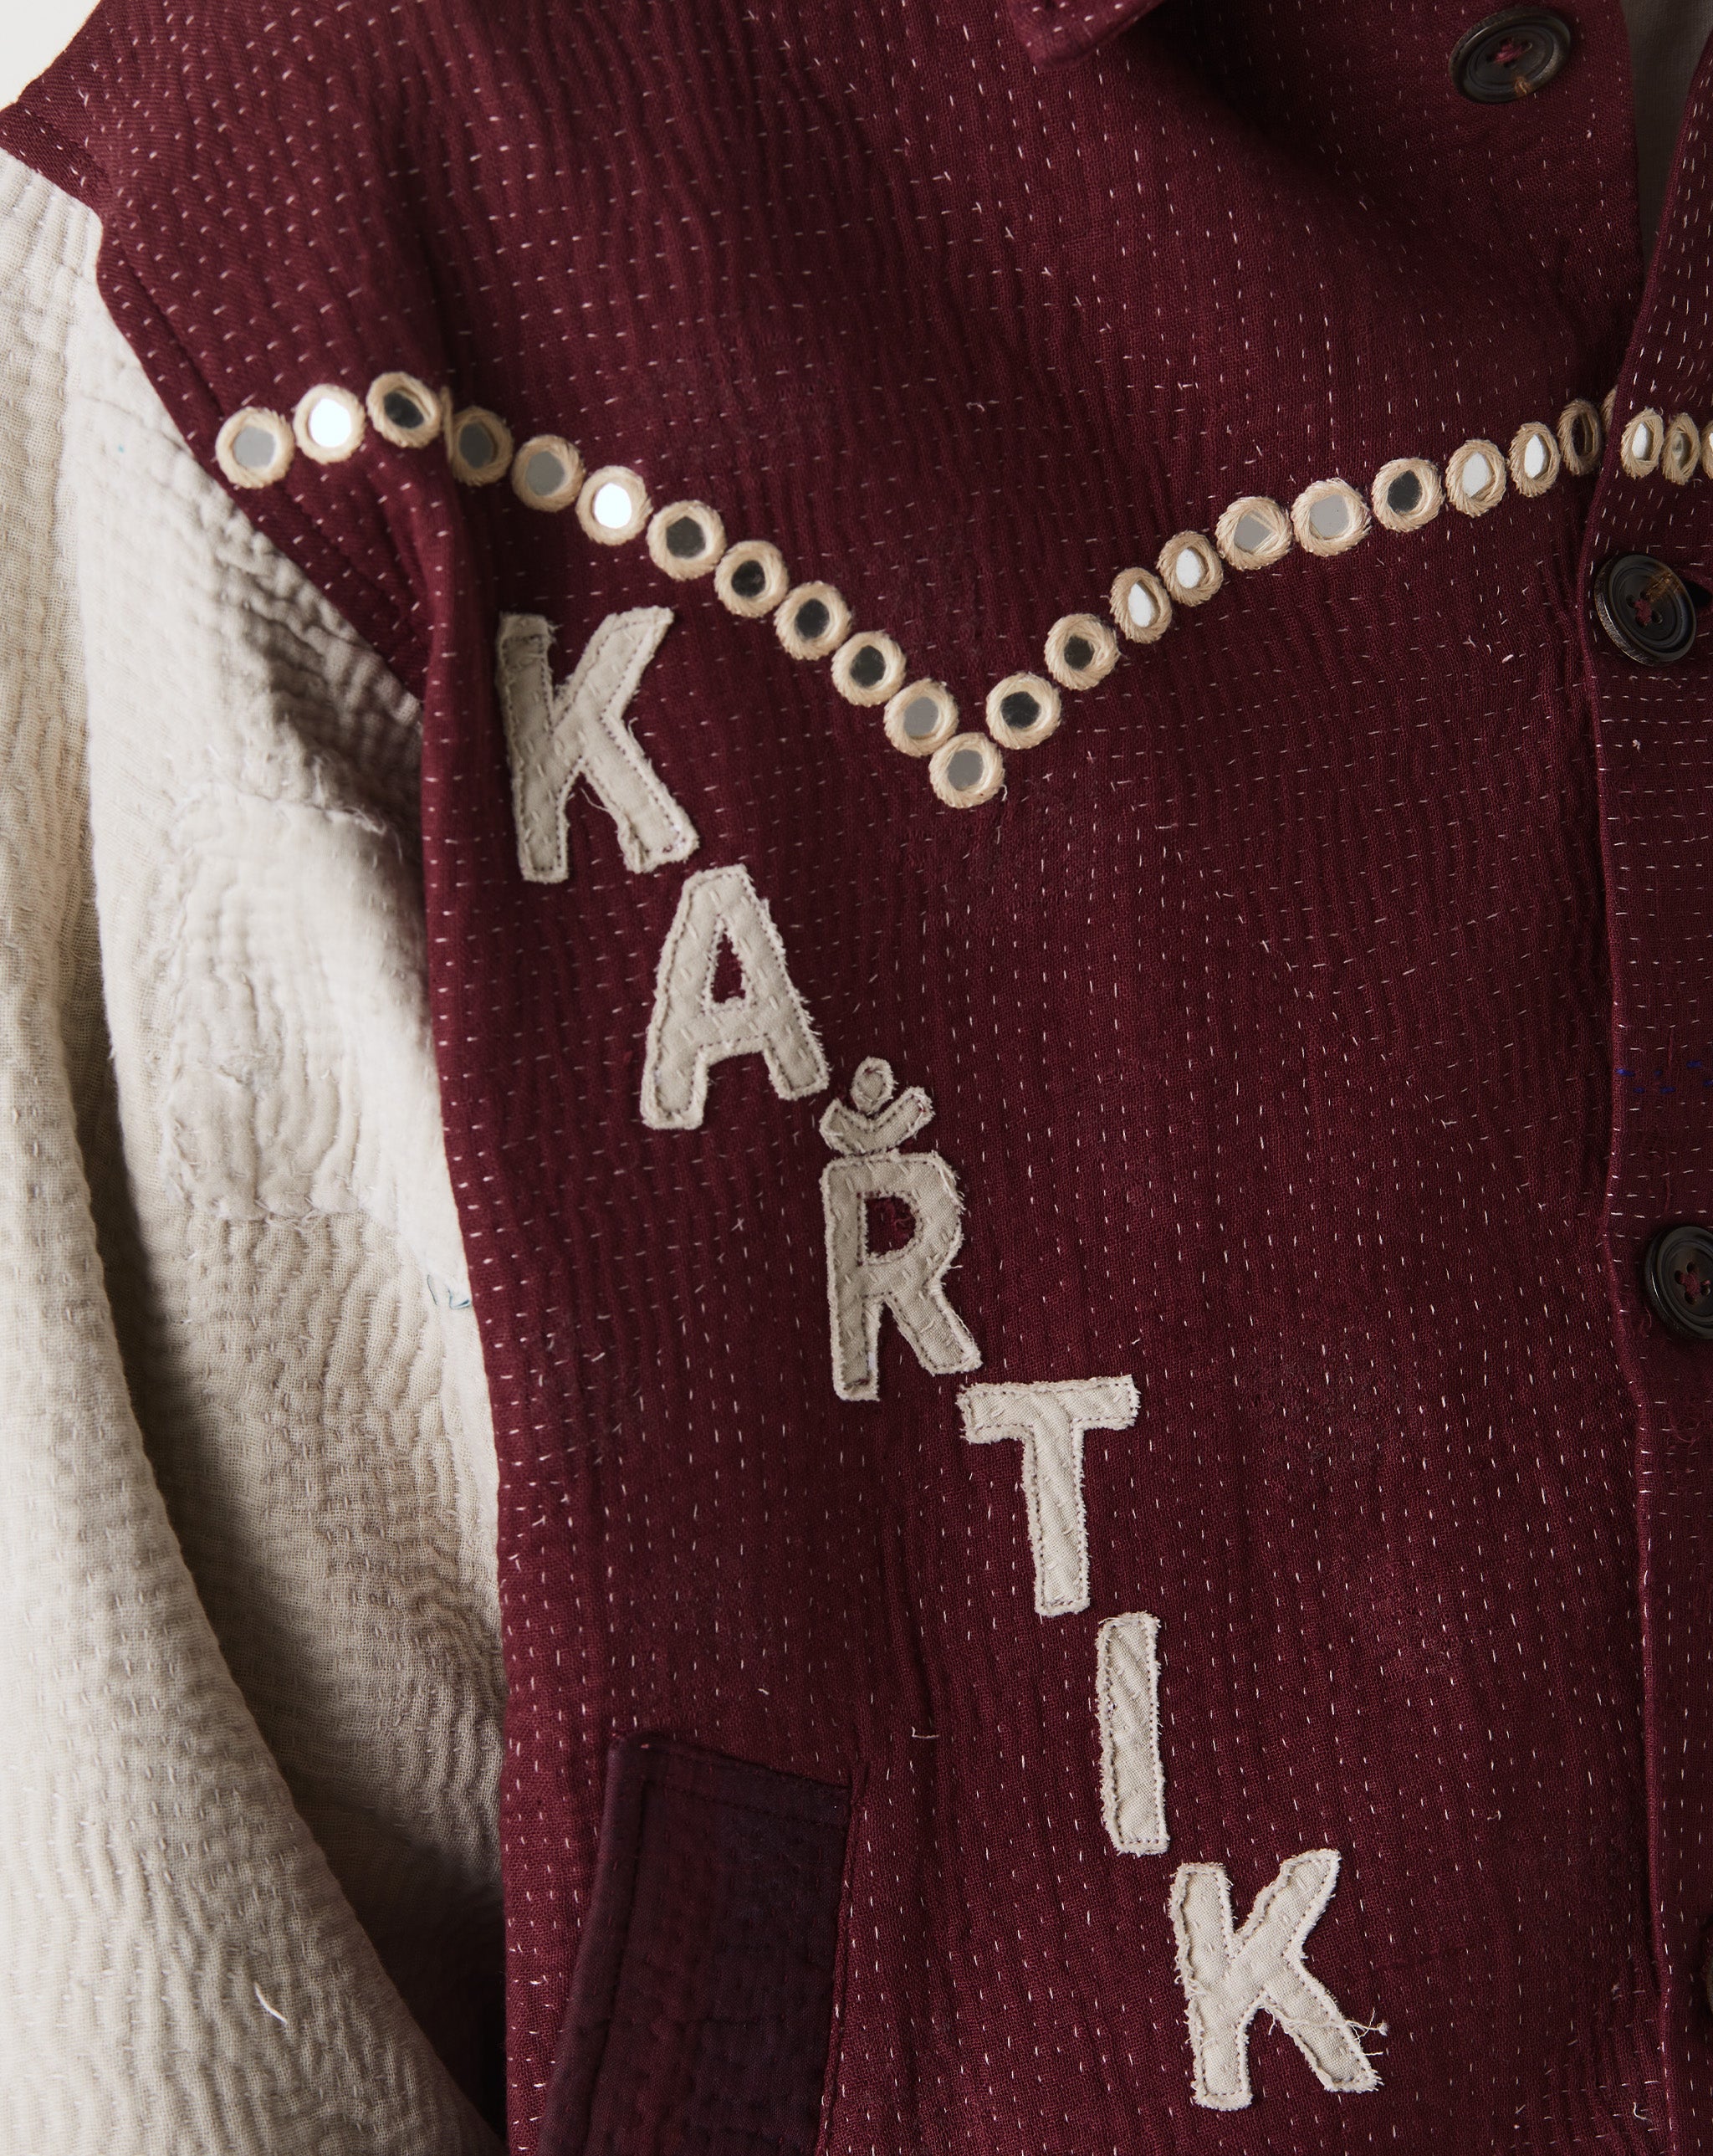 Kartik Research Varsity Jacket  - XHIBITION